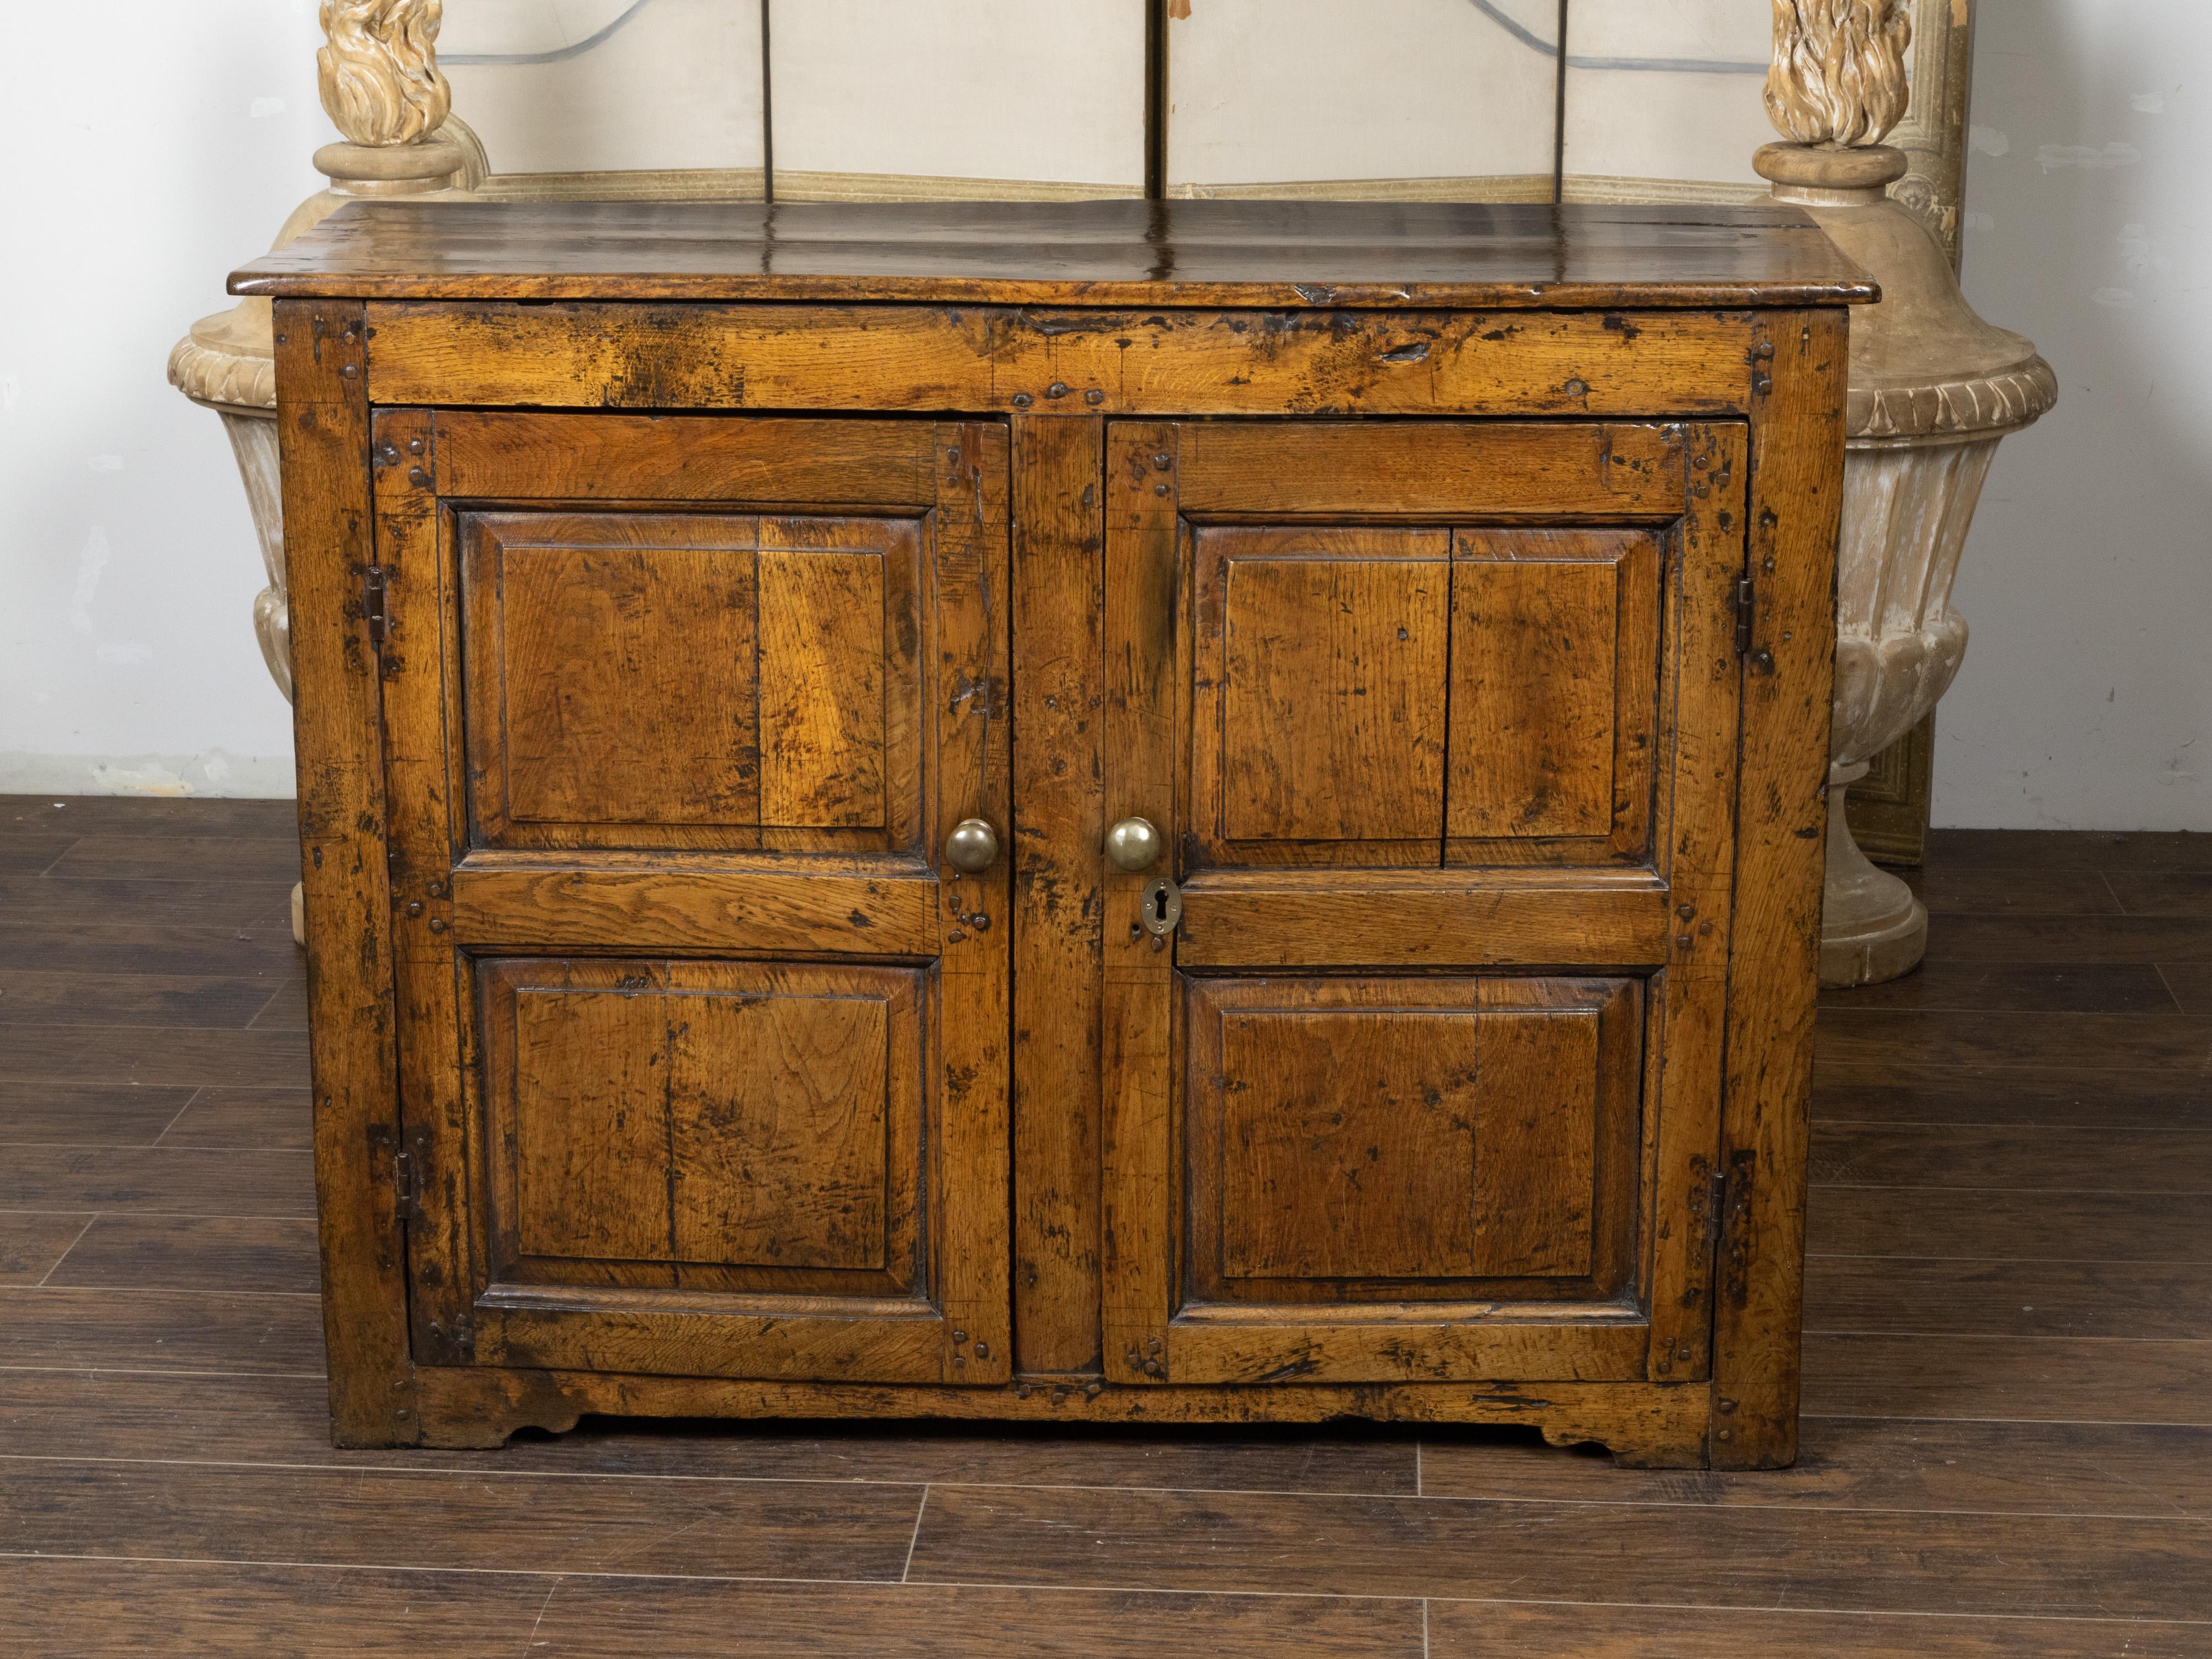 Ein früher englischer Eichenschrank aus dem 18. Jahrhundert mit rustikalem Aussehen, zwei Türen, geschnitzten Paneelen und Patina. Dieser Schrank aus Eichenholz, der im 18. Jahrhundert in England hergestellt wurde, bezaubert durch sein ländliches